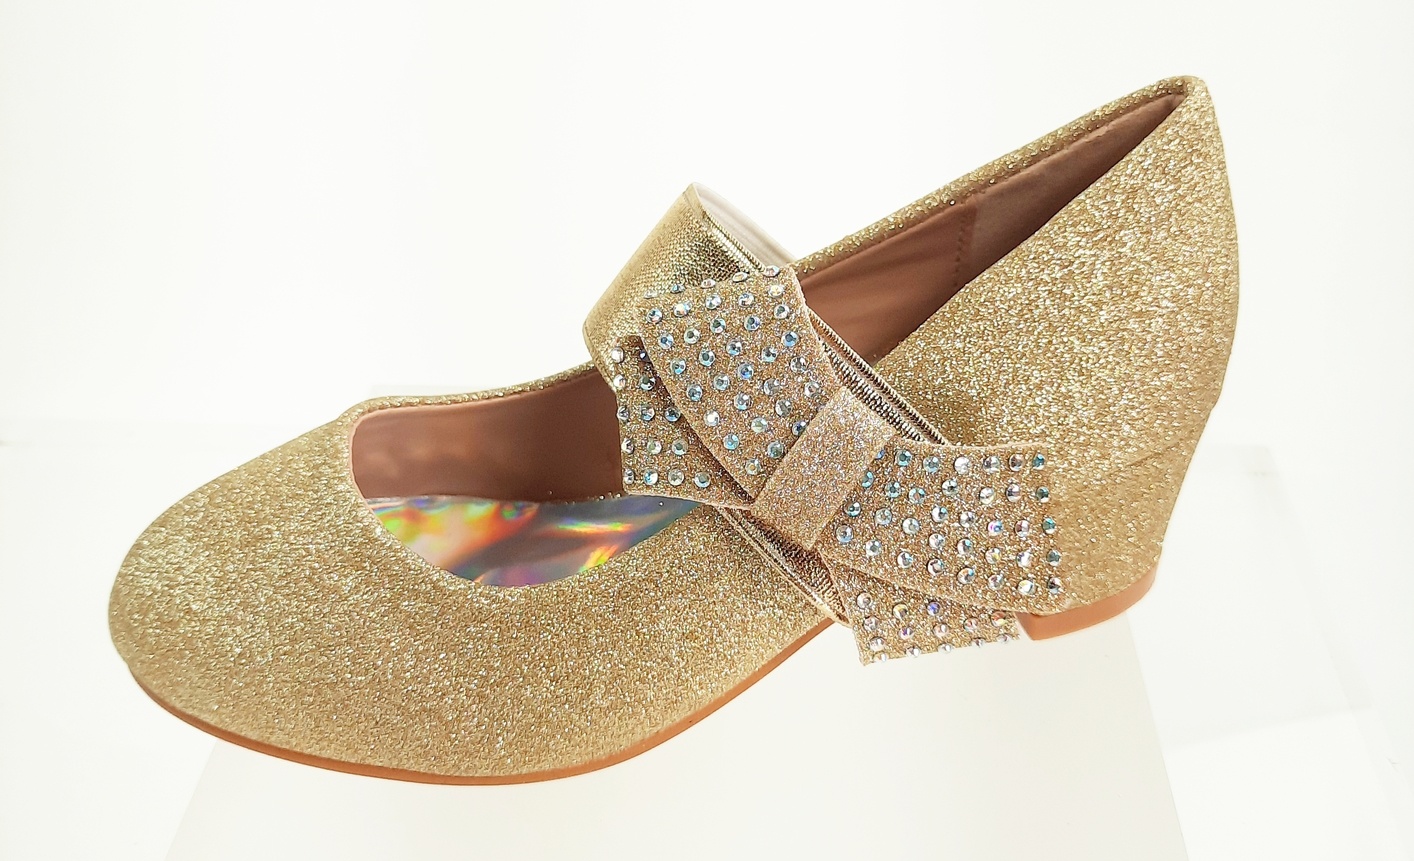 Meisjesschoenen Meisjesschoen - Spaanse schoentjes - glitter - strik - band - goud